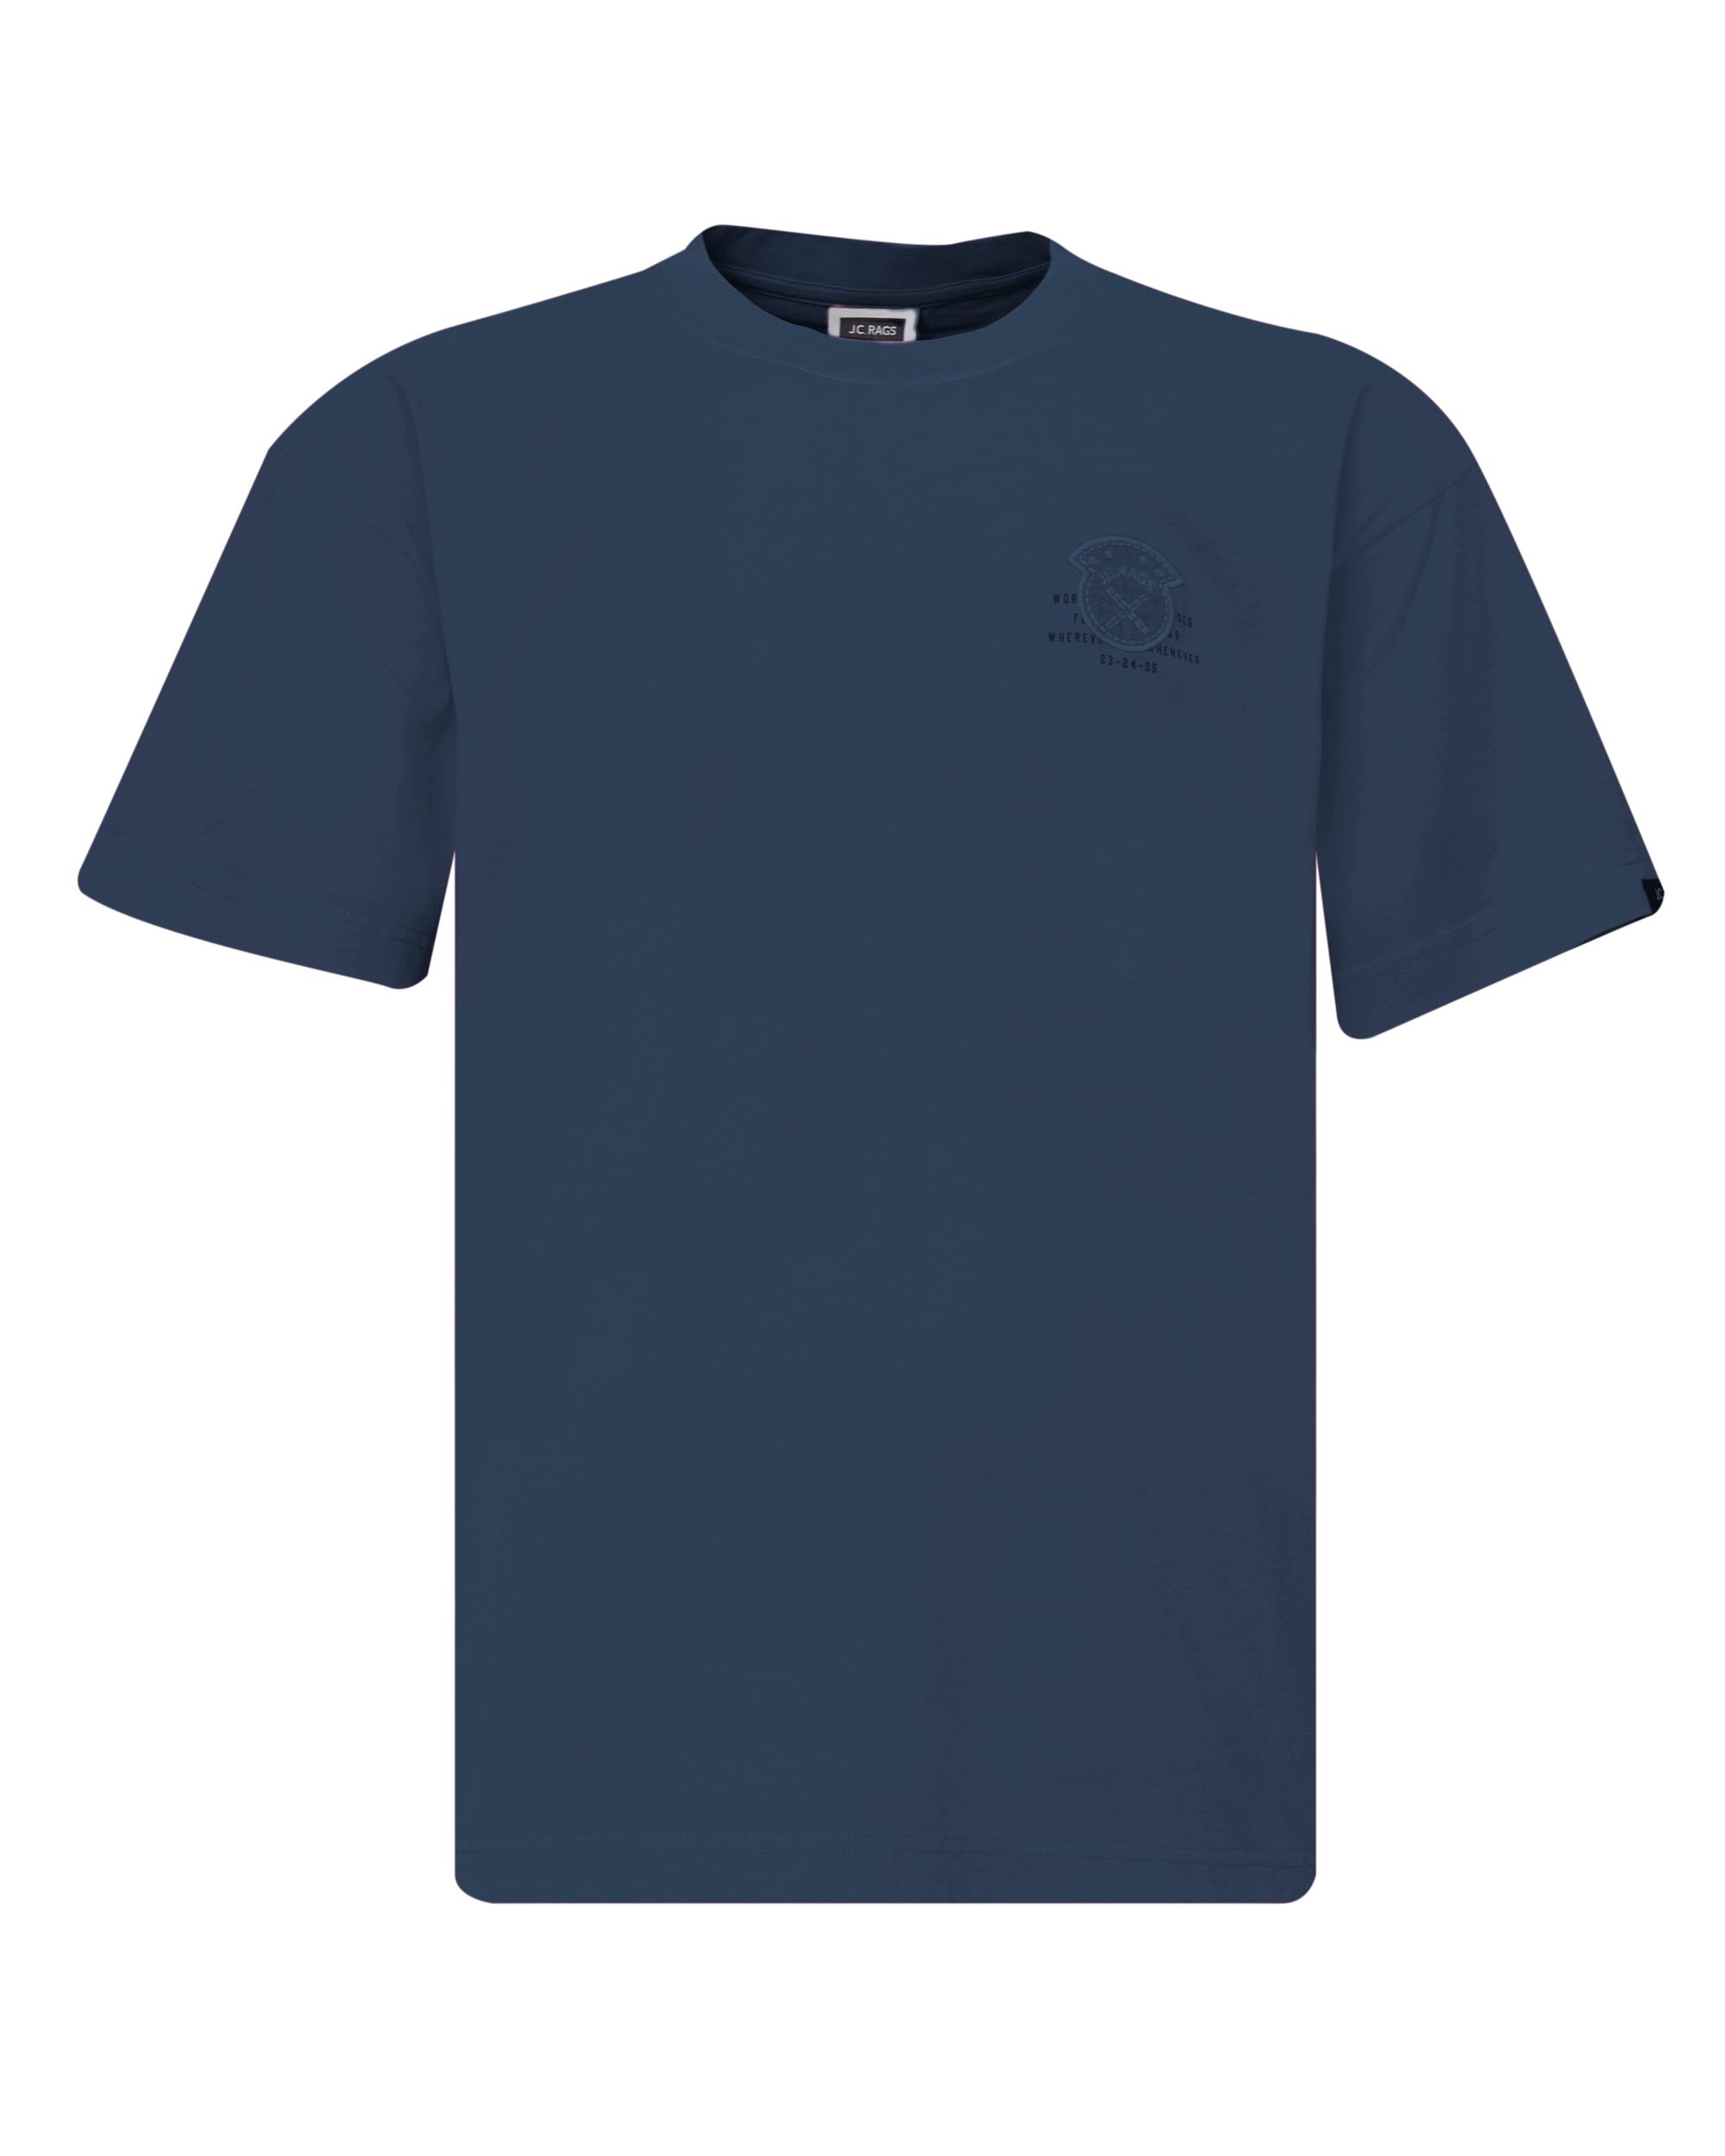 J.C. RAGS Ron T shirt KM Sky Captain 084755-001-L